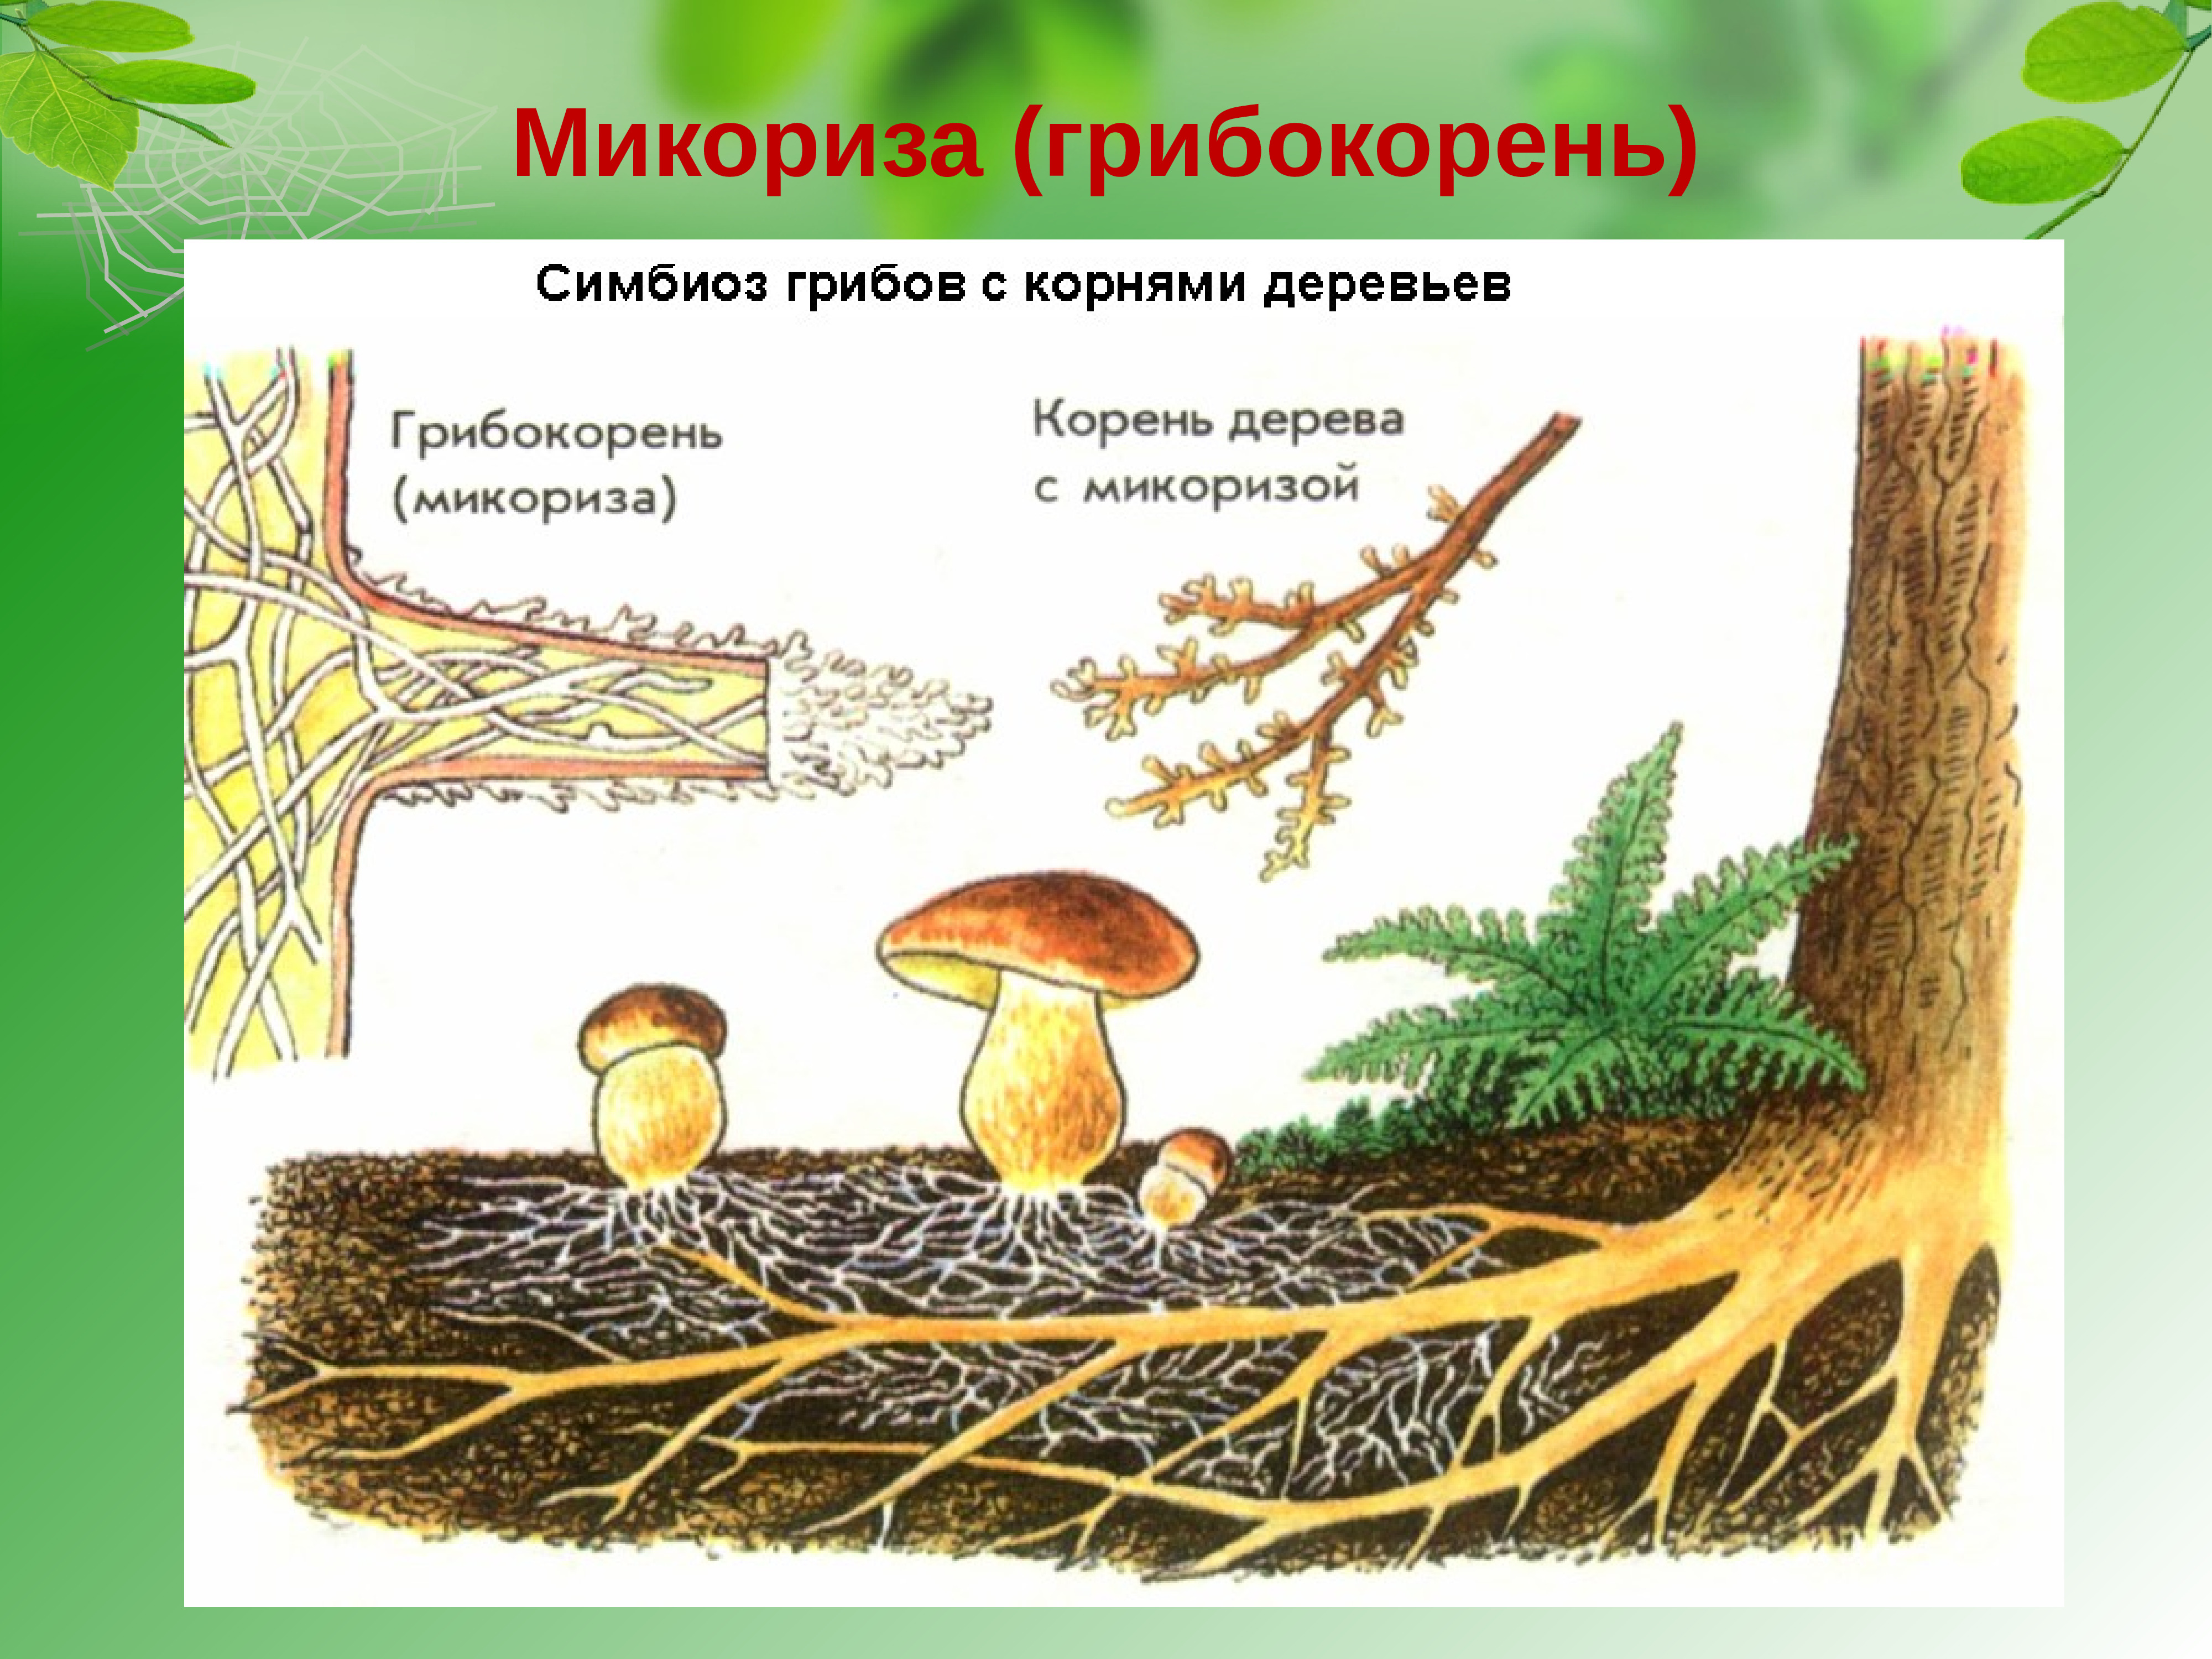 Плодовое царство. Шляпочные грибы микориза. Строение гриба микориза. Что такое микориза у грибов. Трюфель микориза.